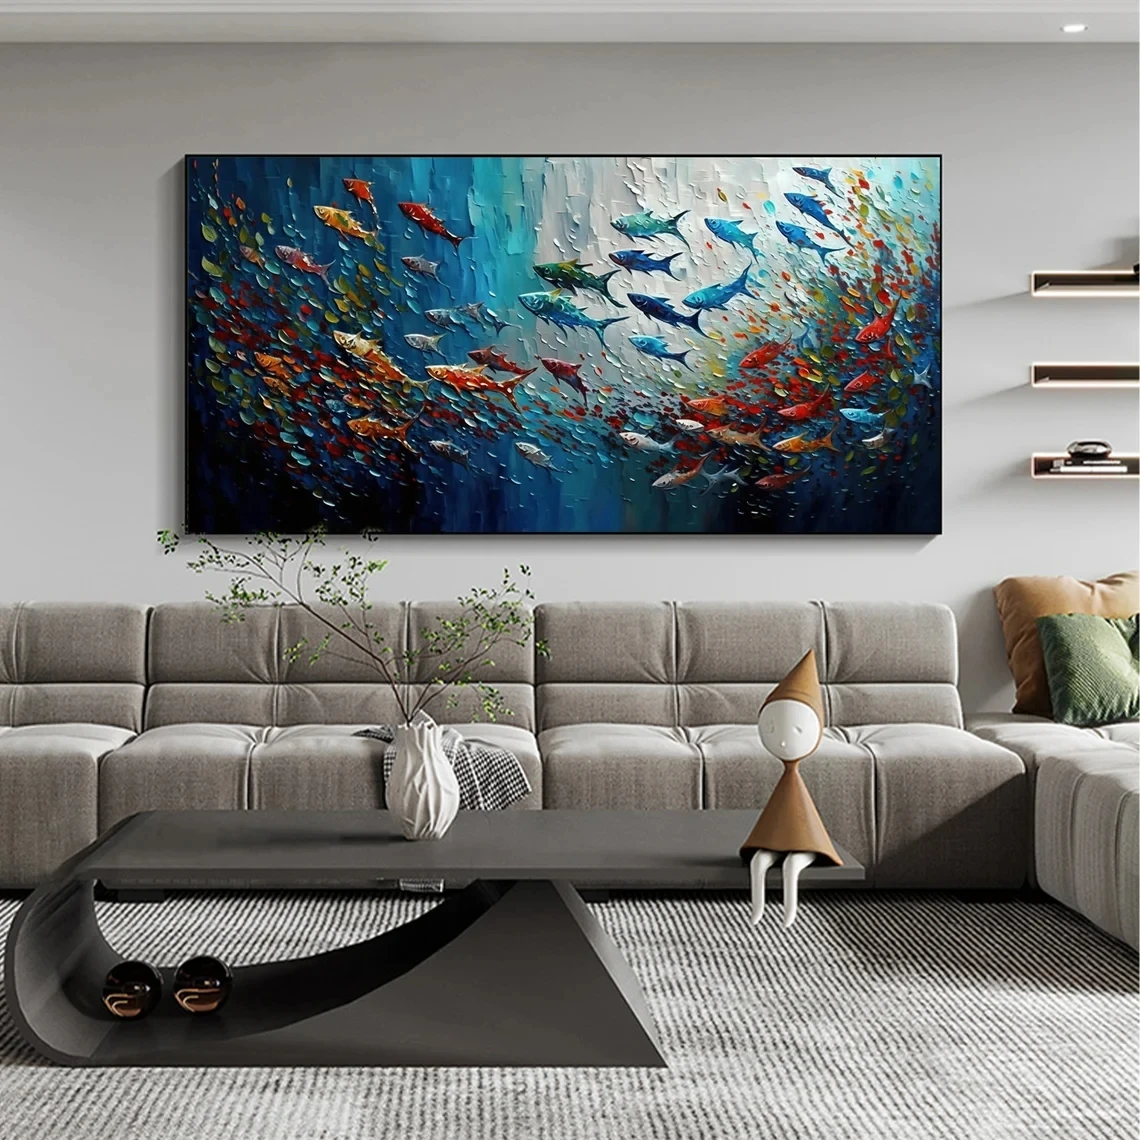 Pintura al óleo sobre lienzo de escuela de peces pintada a mano, arte de pared personalizado, cuadro de pintura abstracta de mar azul, decoración del hogar para sala de estar